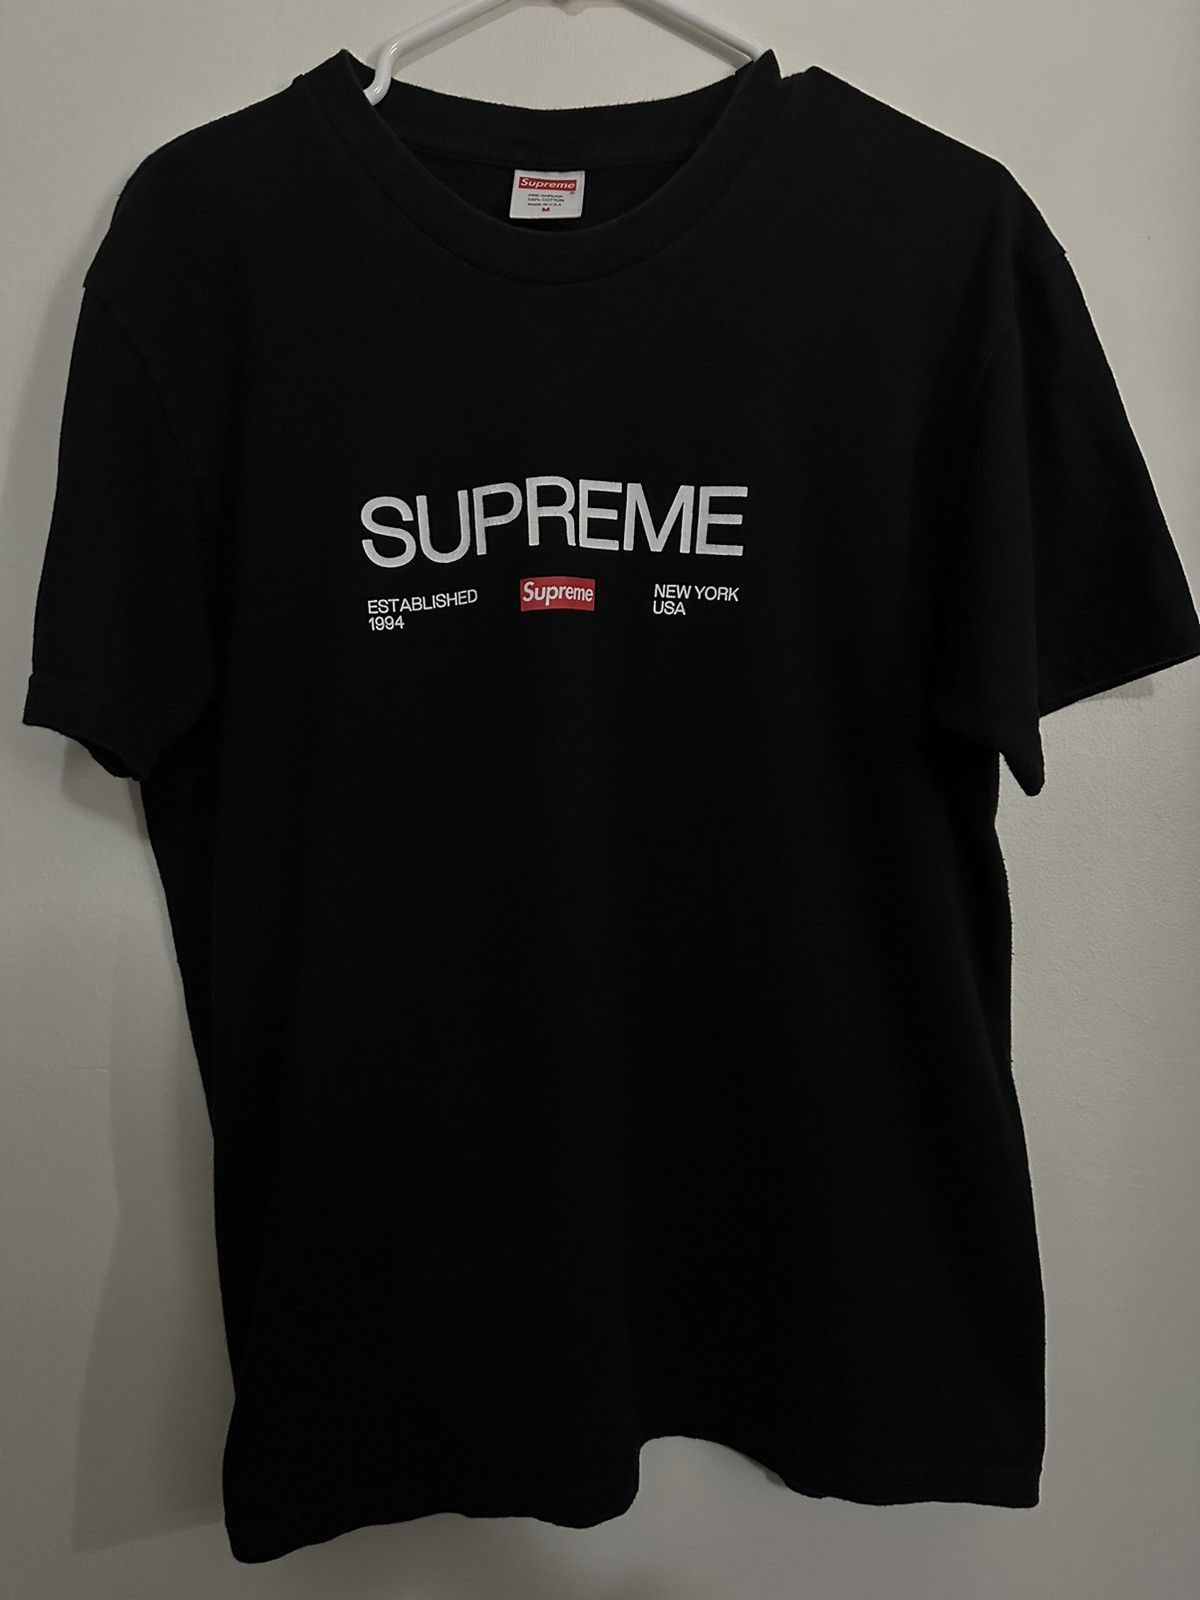 Supreme Supreme Est. 1994 Tee | Grailed